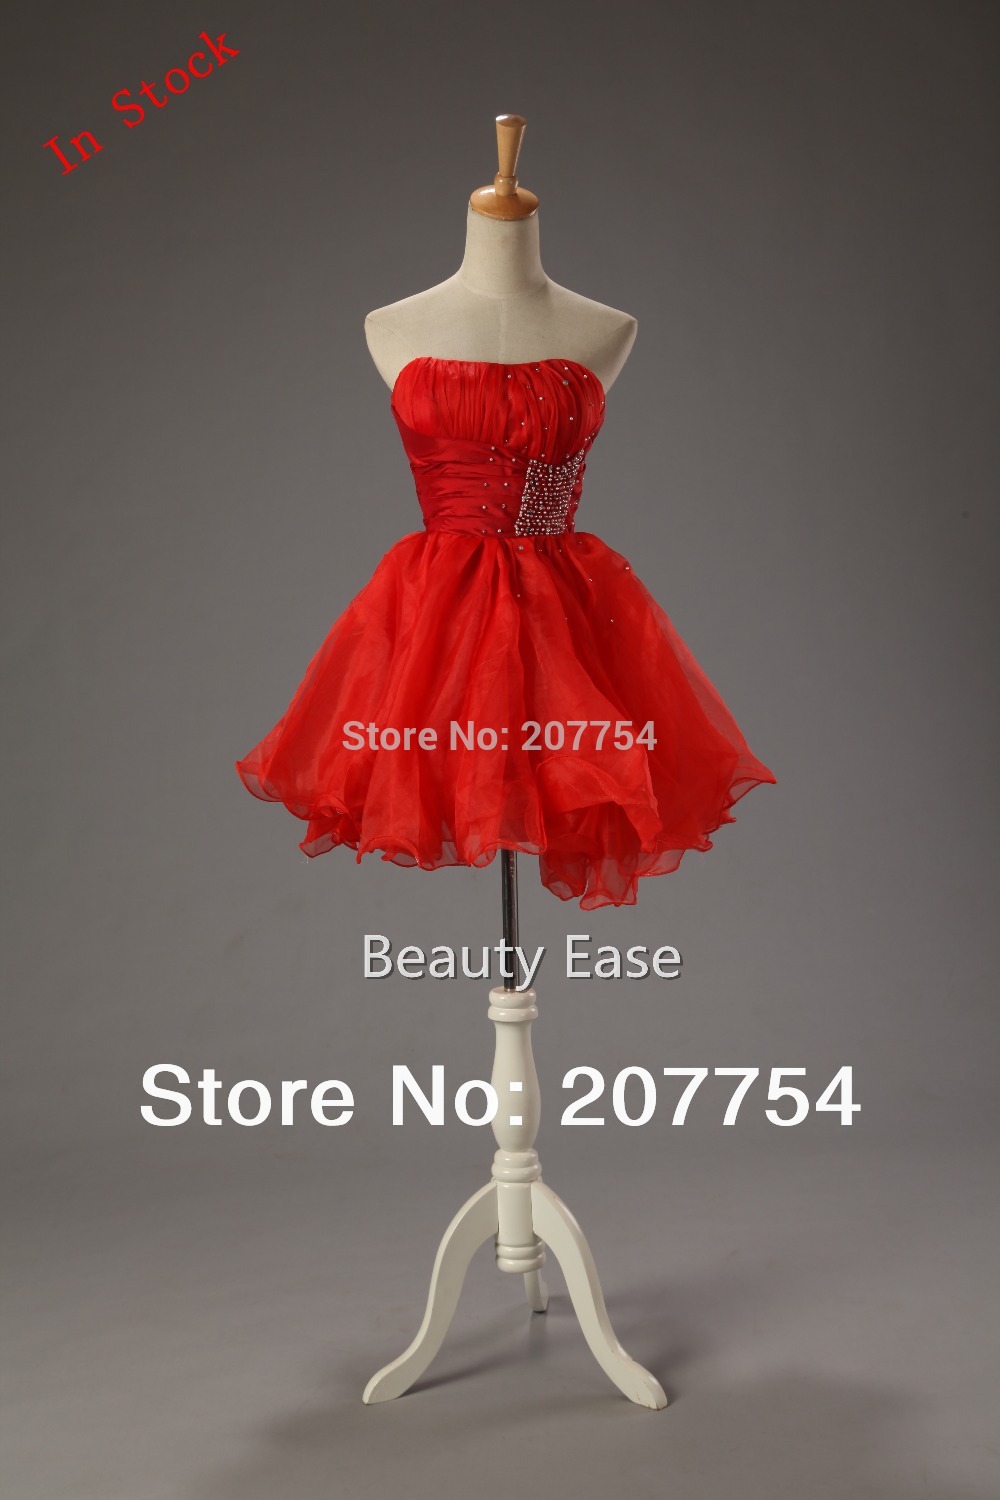 ... -Red-Short-Homecoming-Dresses-Beading-Little-Black-Dress-Size-6-8.jpg